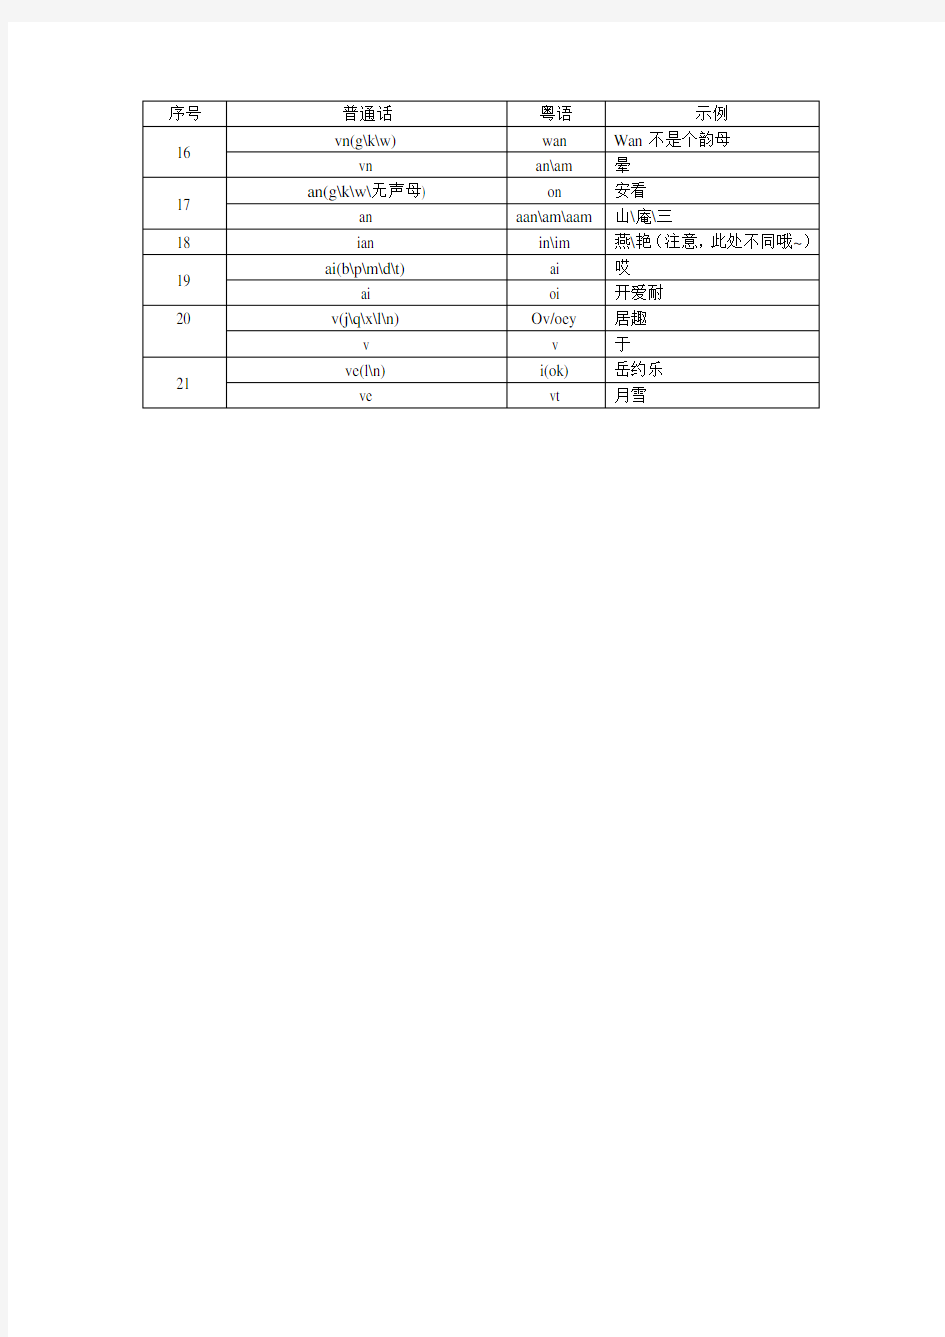 粤语普通话发音对照表及其示例(含音调、声母、韵母三张表格并总结示例,欢迎指正)